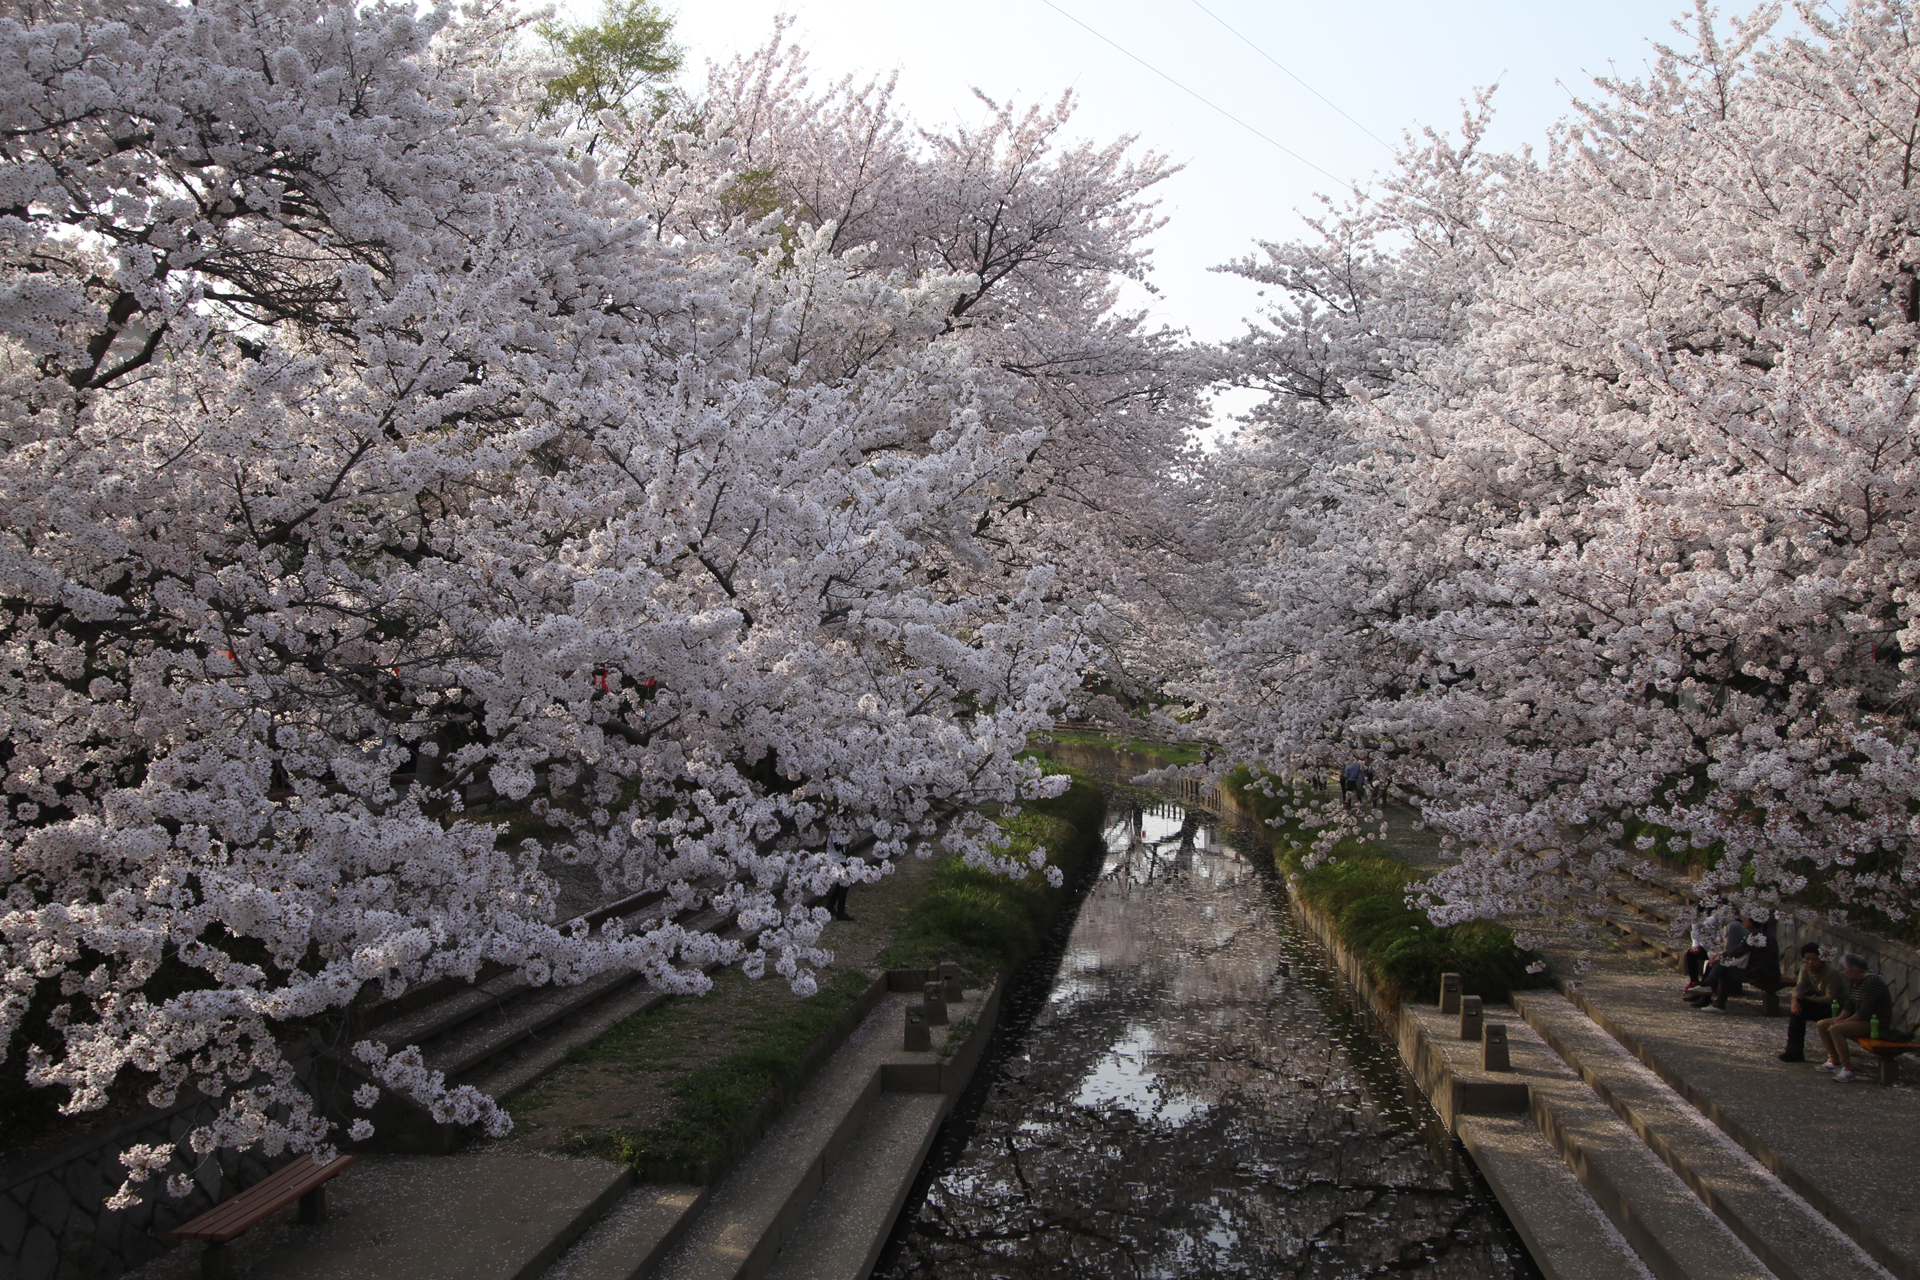 元荒川の橋の上から見た桜のトンネル